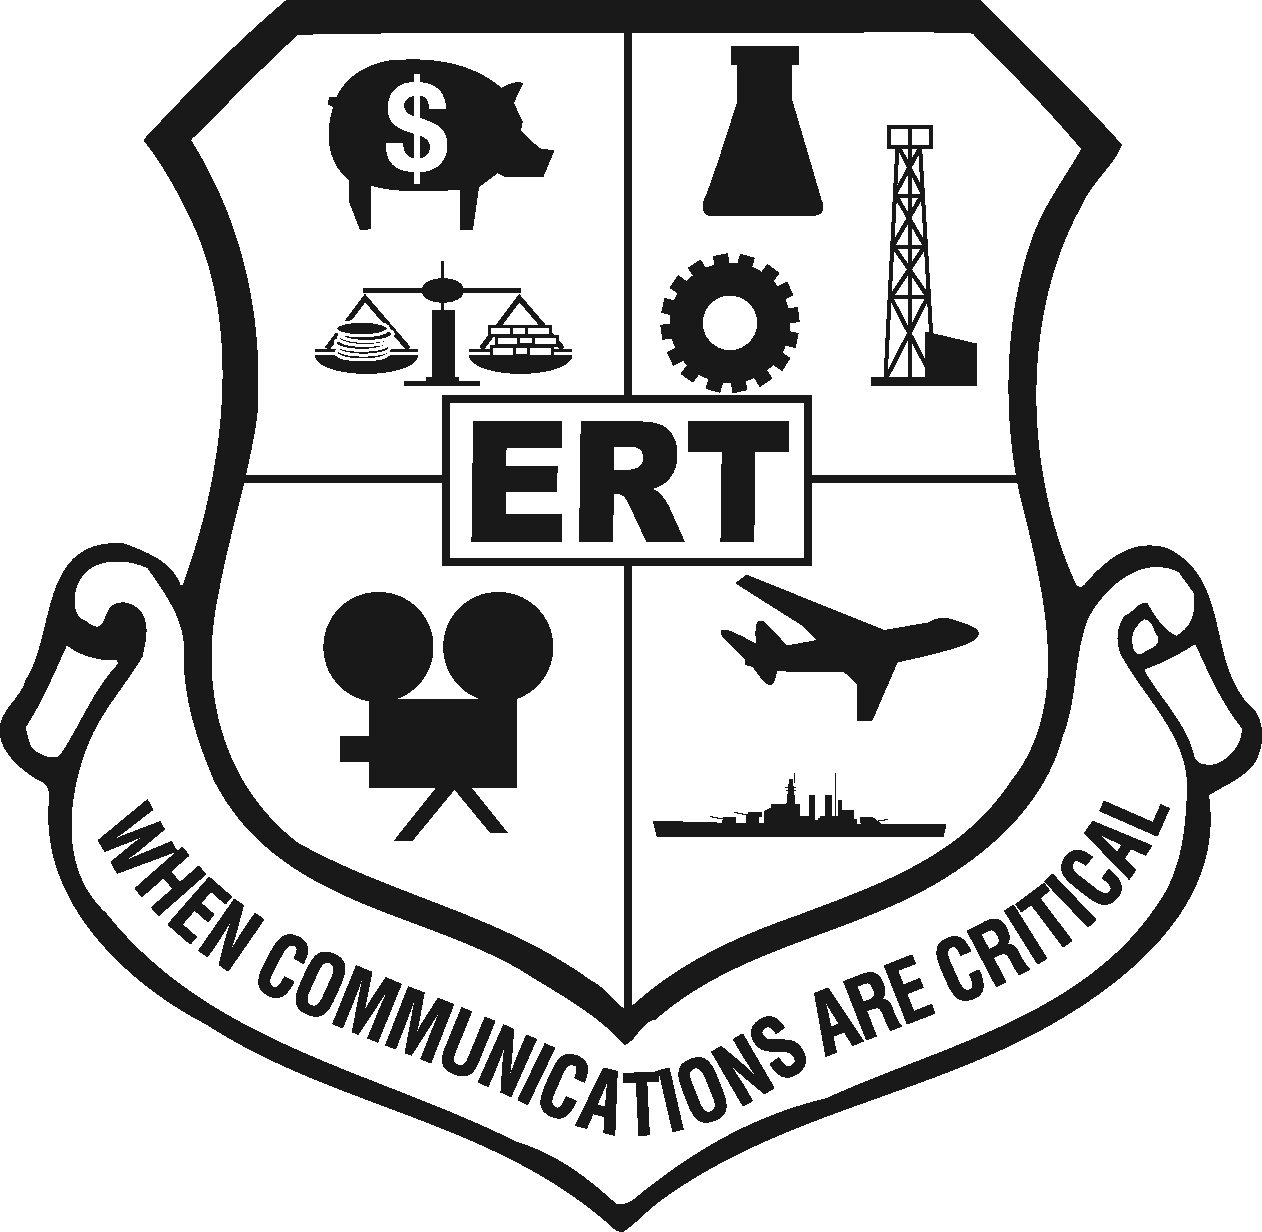  ERT WHEN COMMUNICATIONS ARE CRITICAL